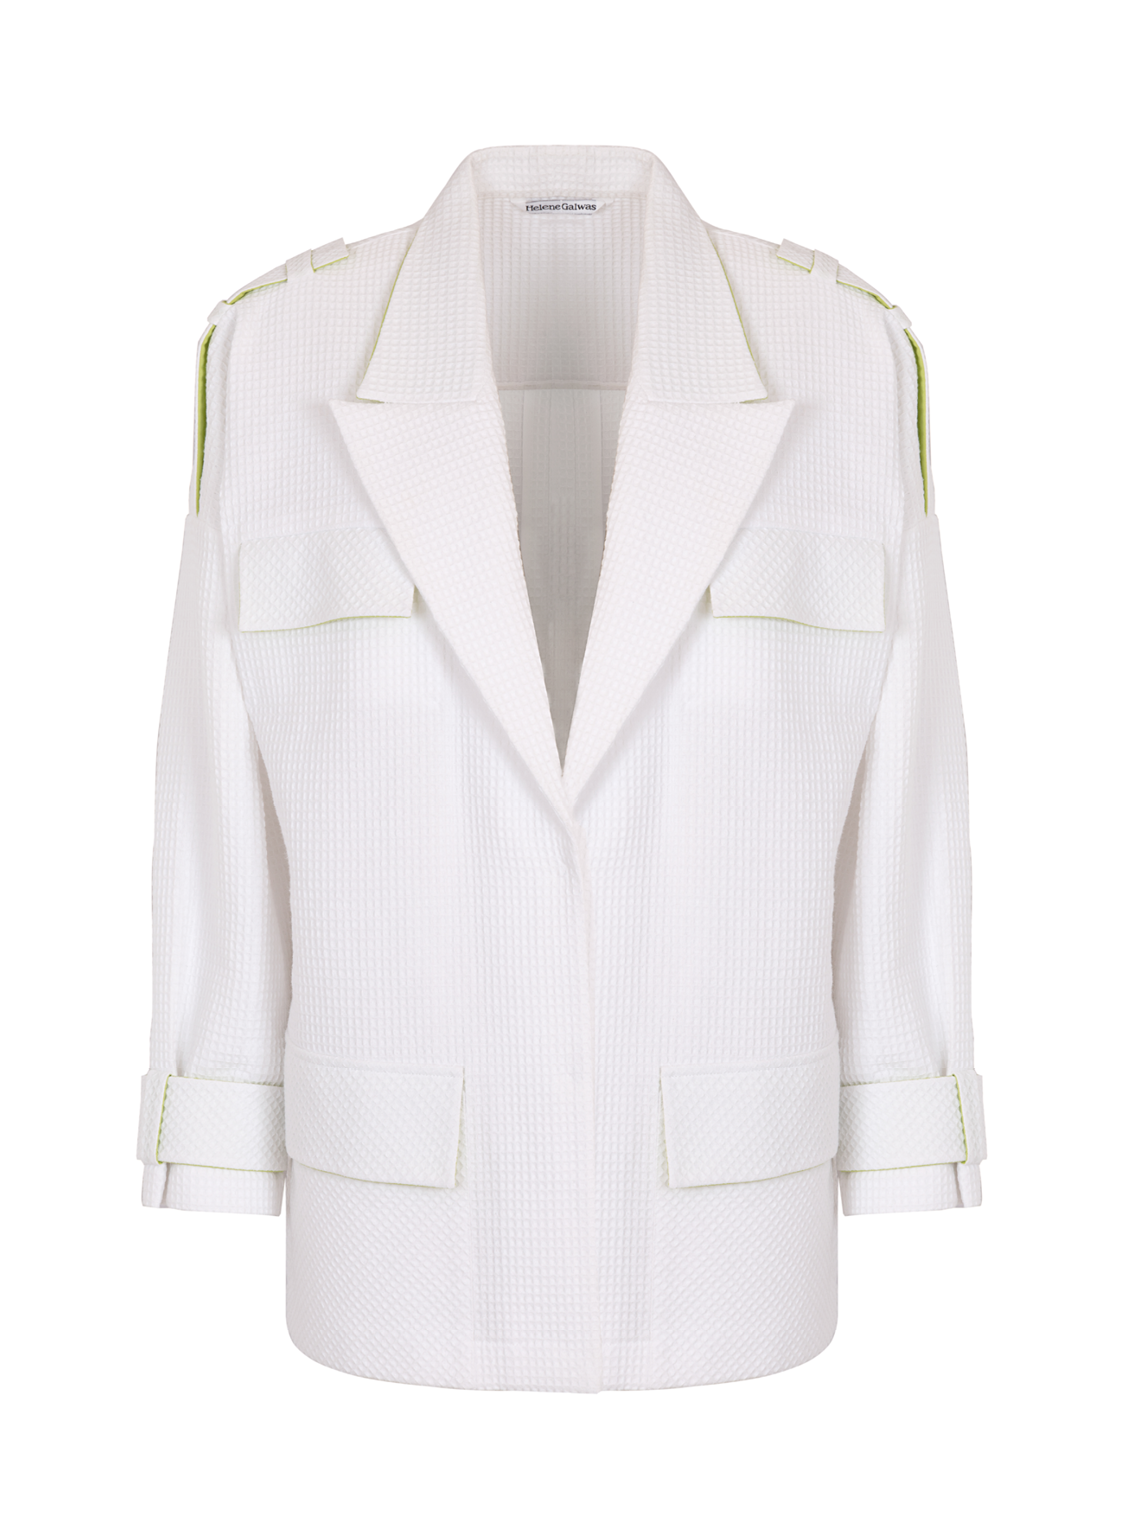 Weiße Oversize Jacke aus Piqué Stoff mit verdeckter Druckknopfleiste und Schulter-Epauletten